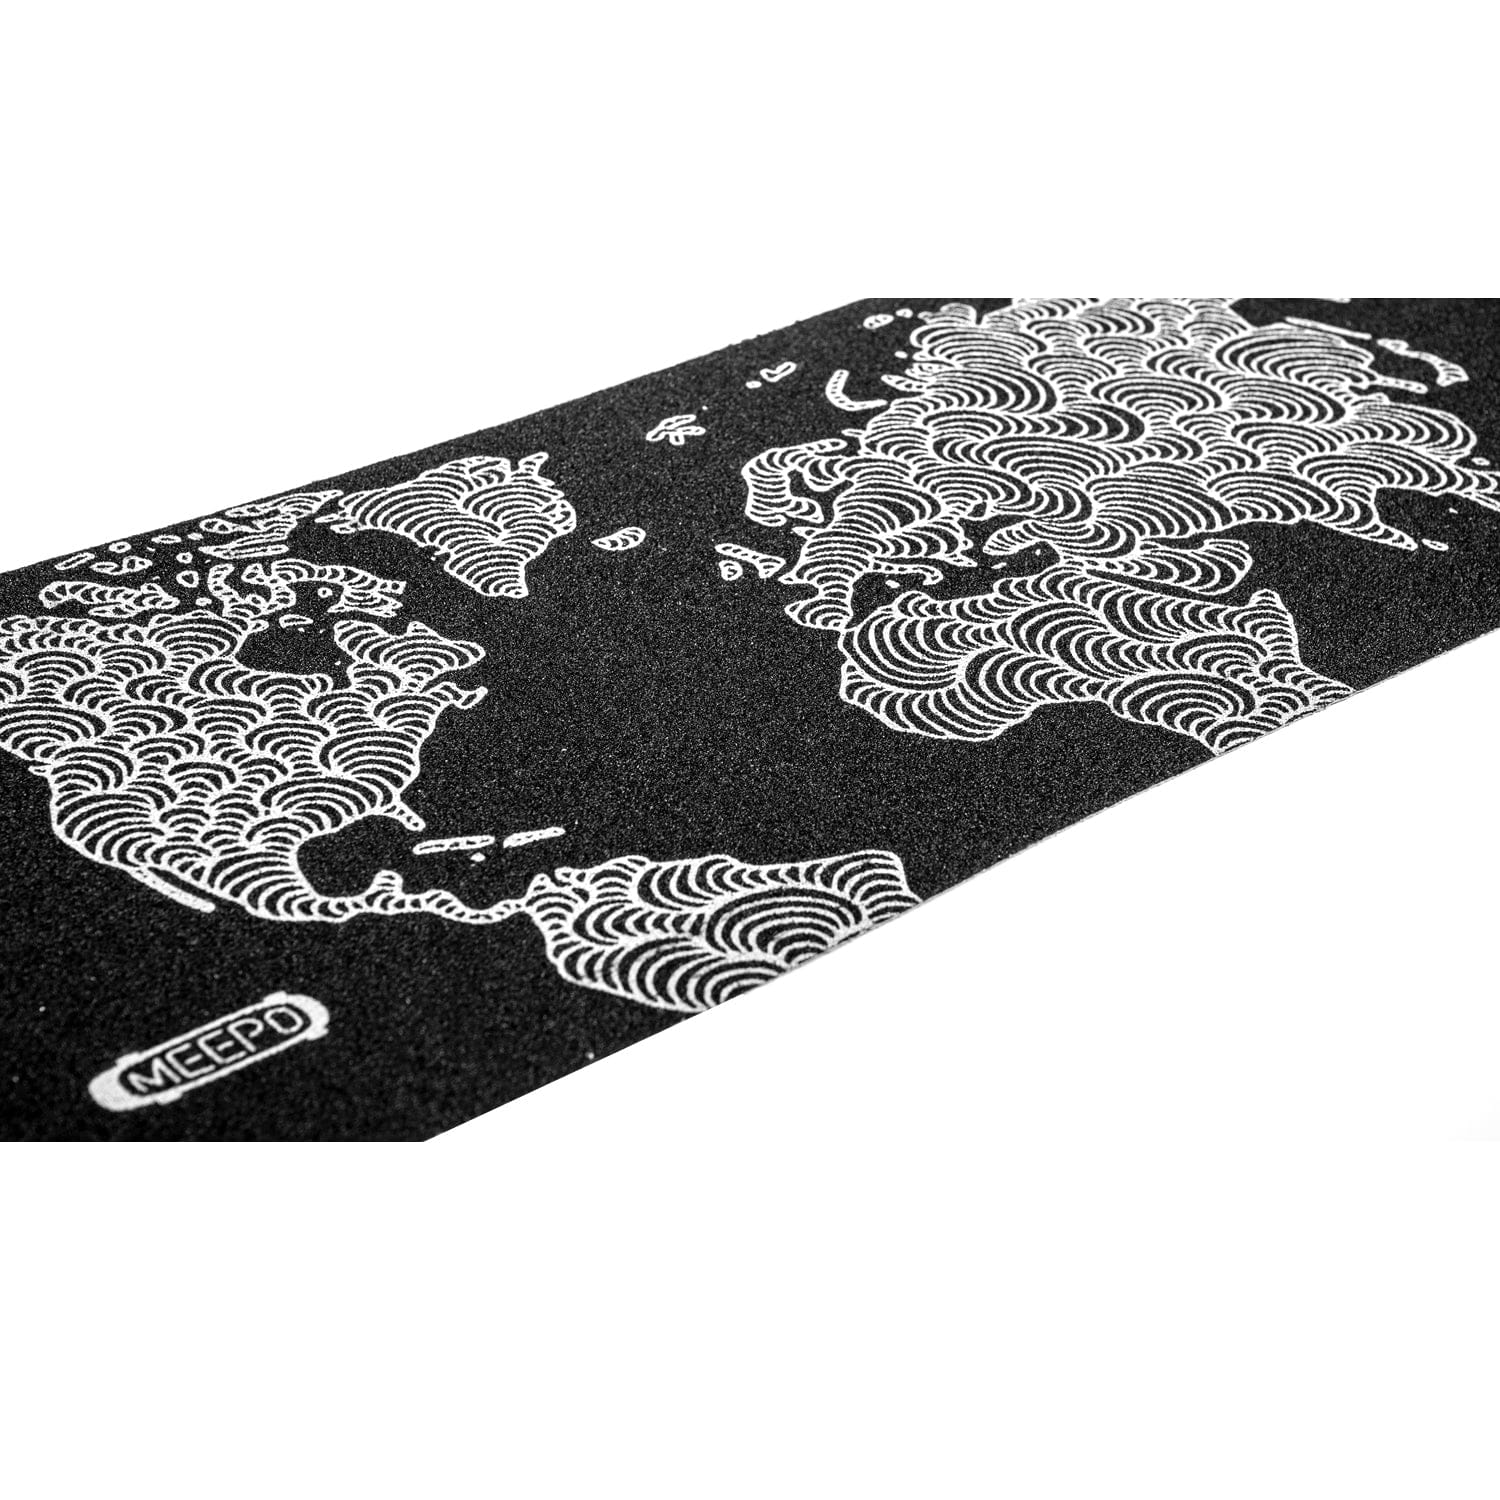 World Map Grip Tape for Hurricane